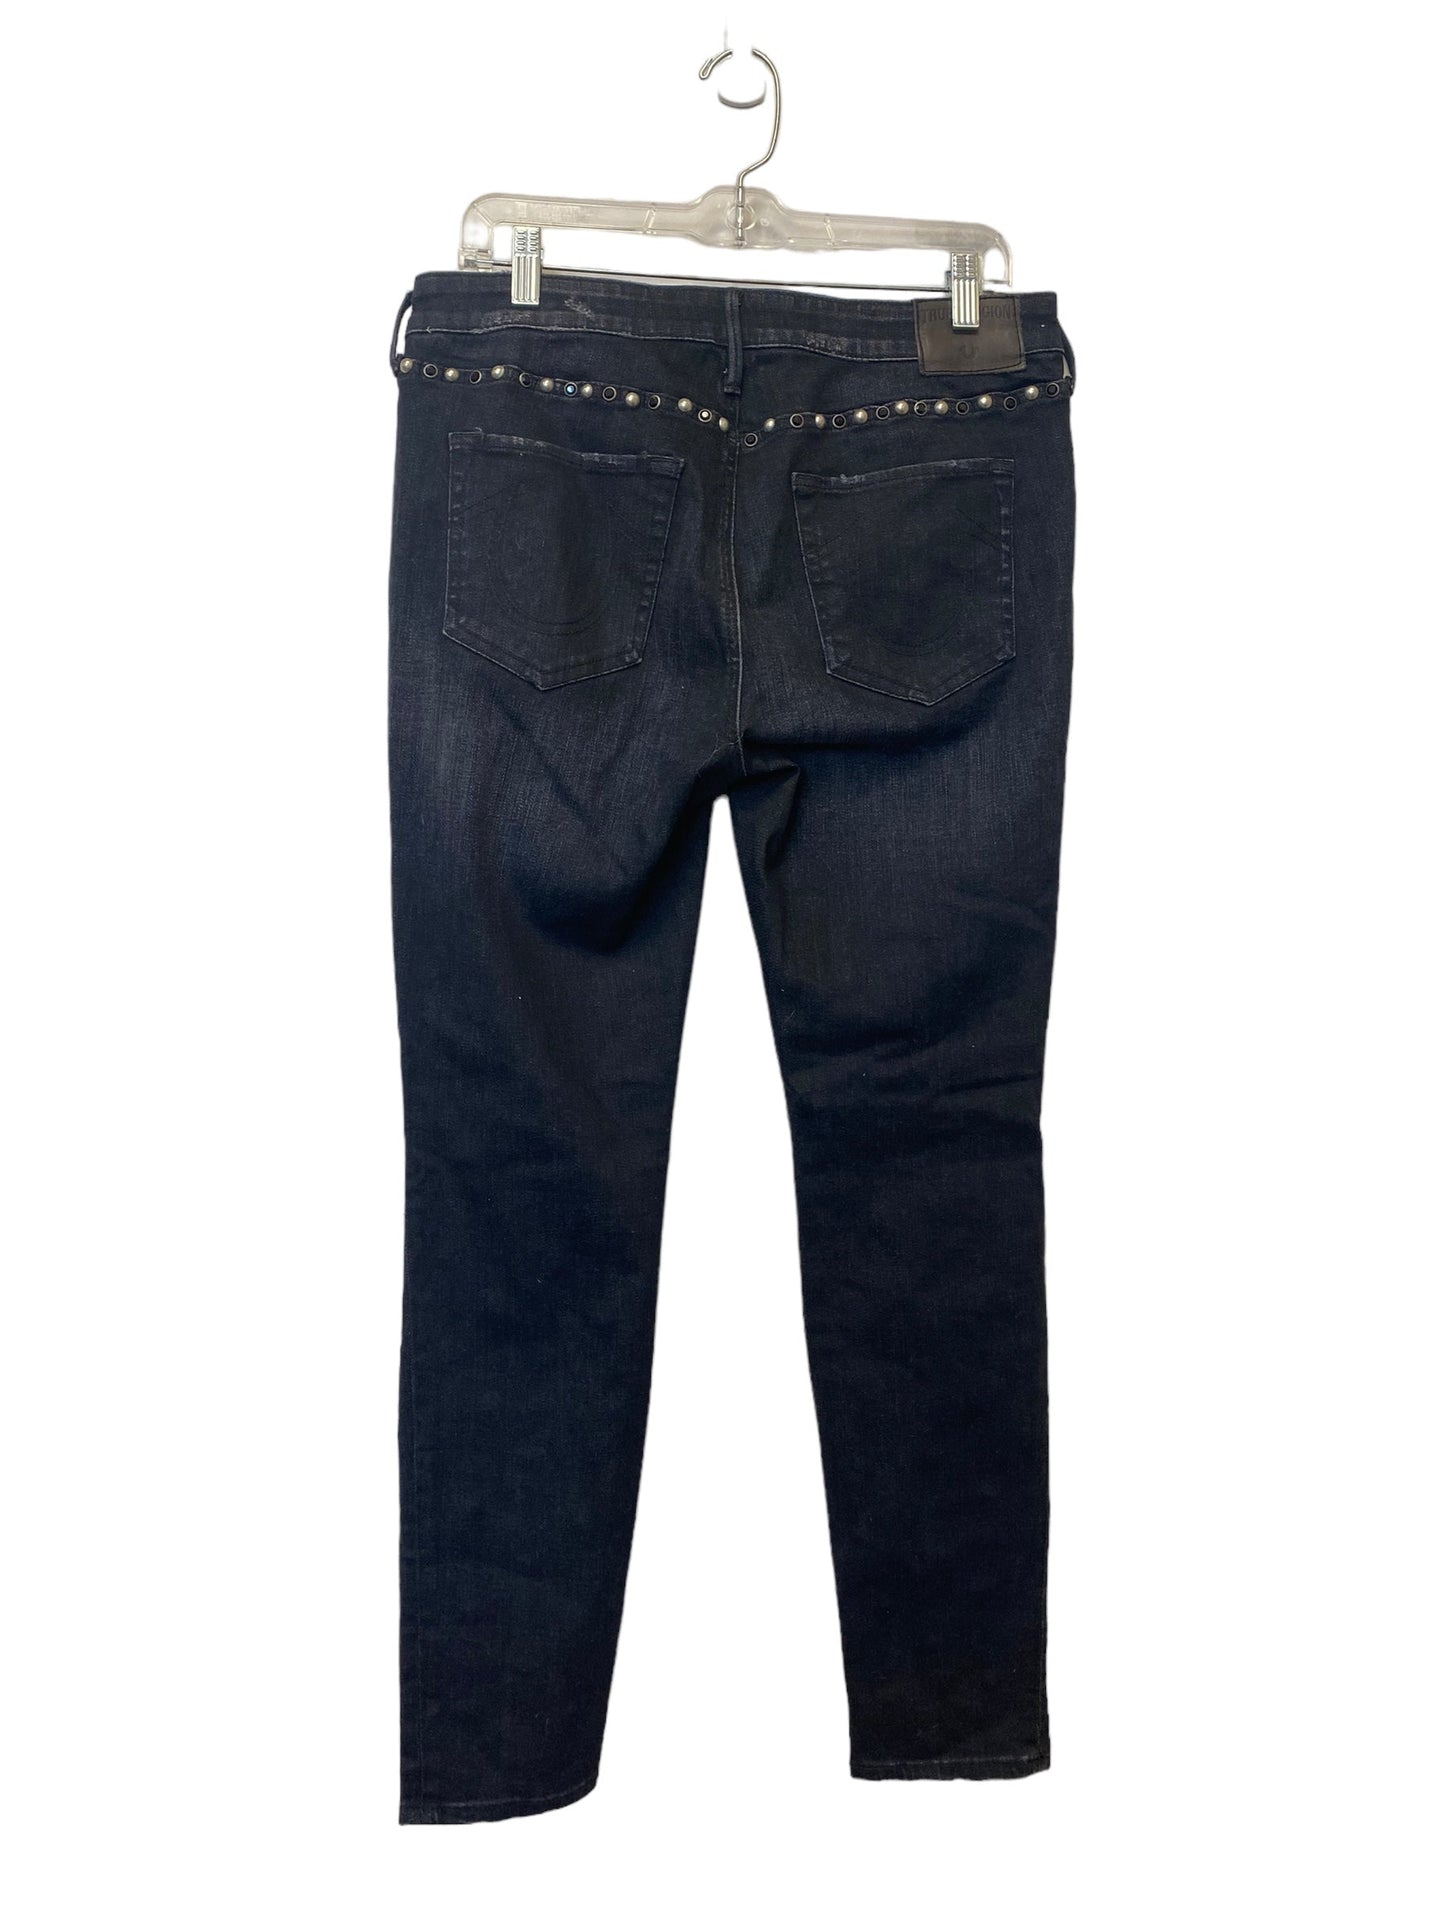 Jeans Skinny By True Religion  Size: 31